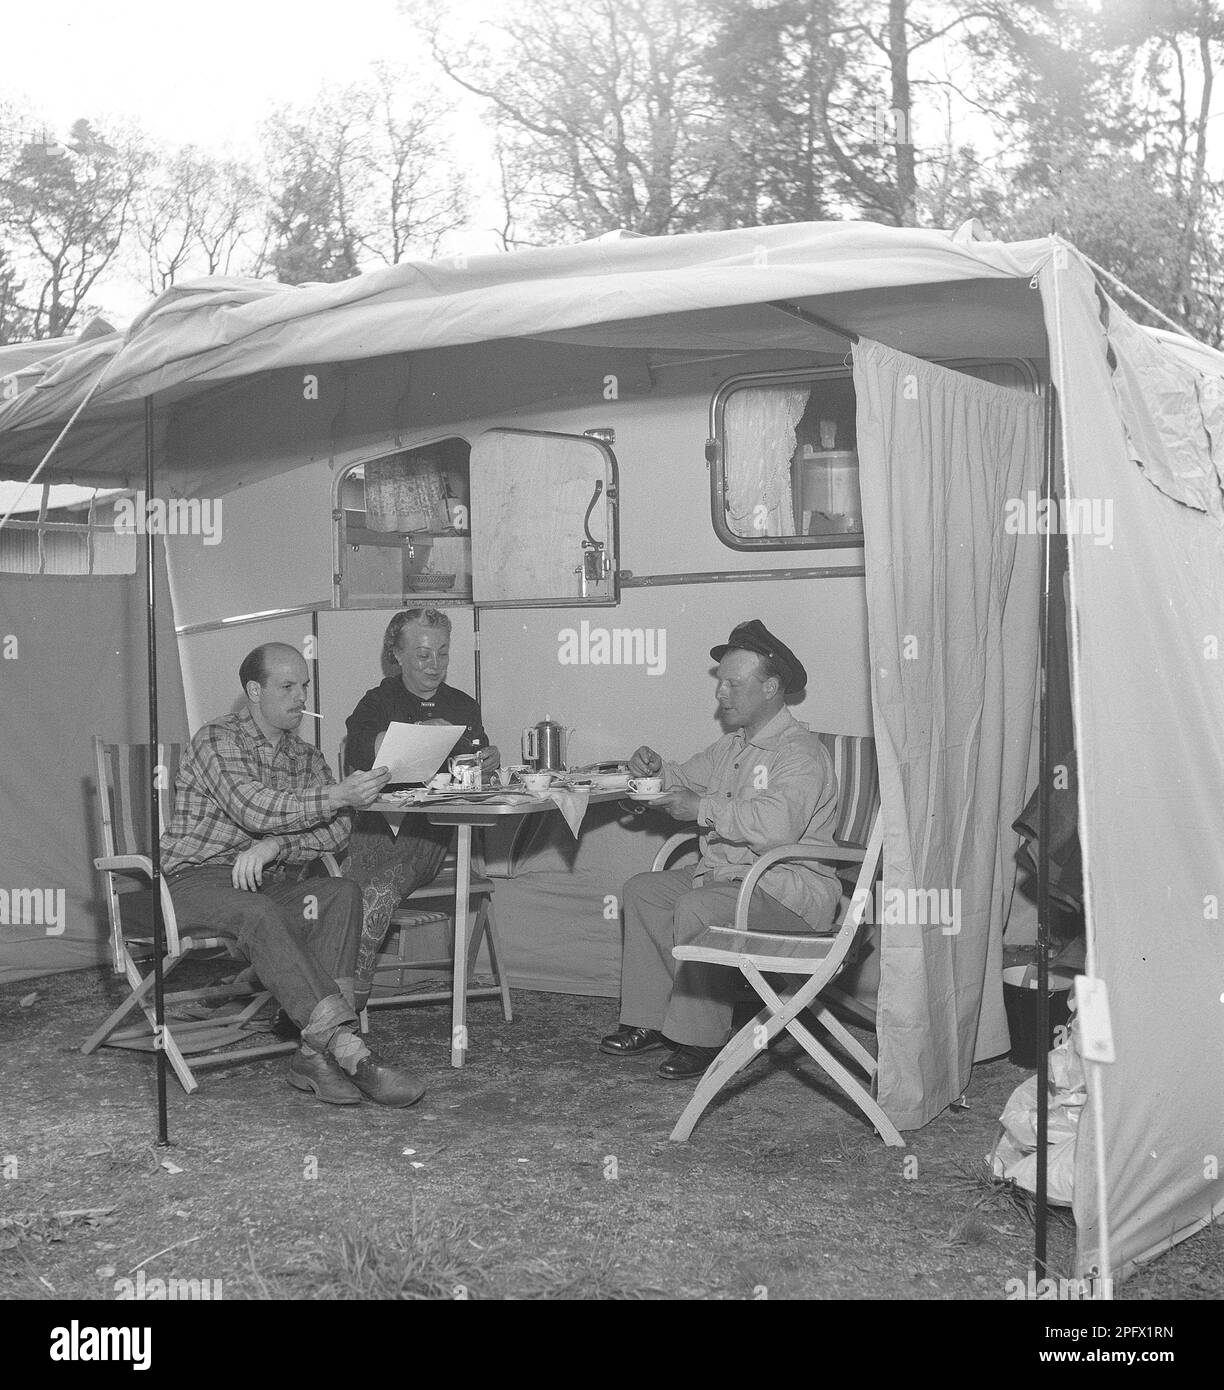 1950s camping. Trois personnes sont assises près de leur caravane en dégustant une tasse de café. L'utilisation de caravanes pour passer les vacances d'été était assez nouvelle à ce moment-là. Suède juillet 1953. Kristoffersson réf. BP30-9 Banque D'Images